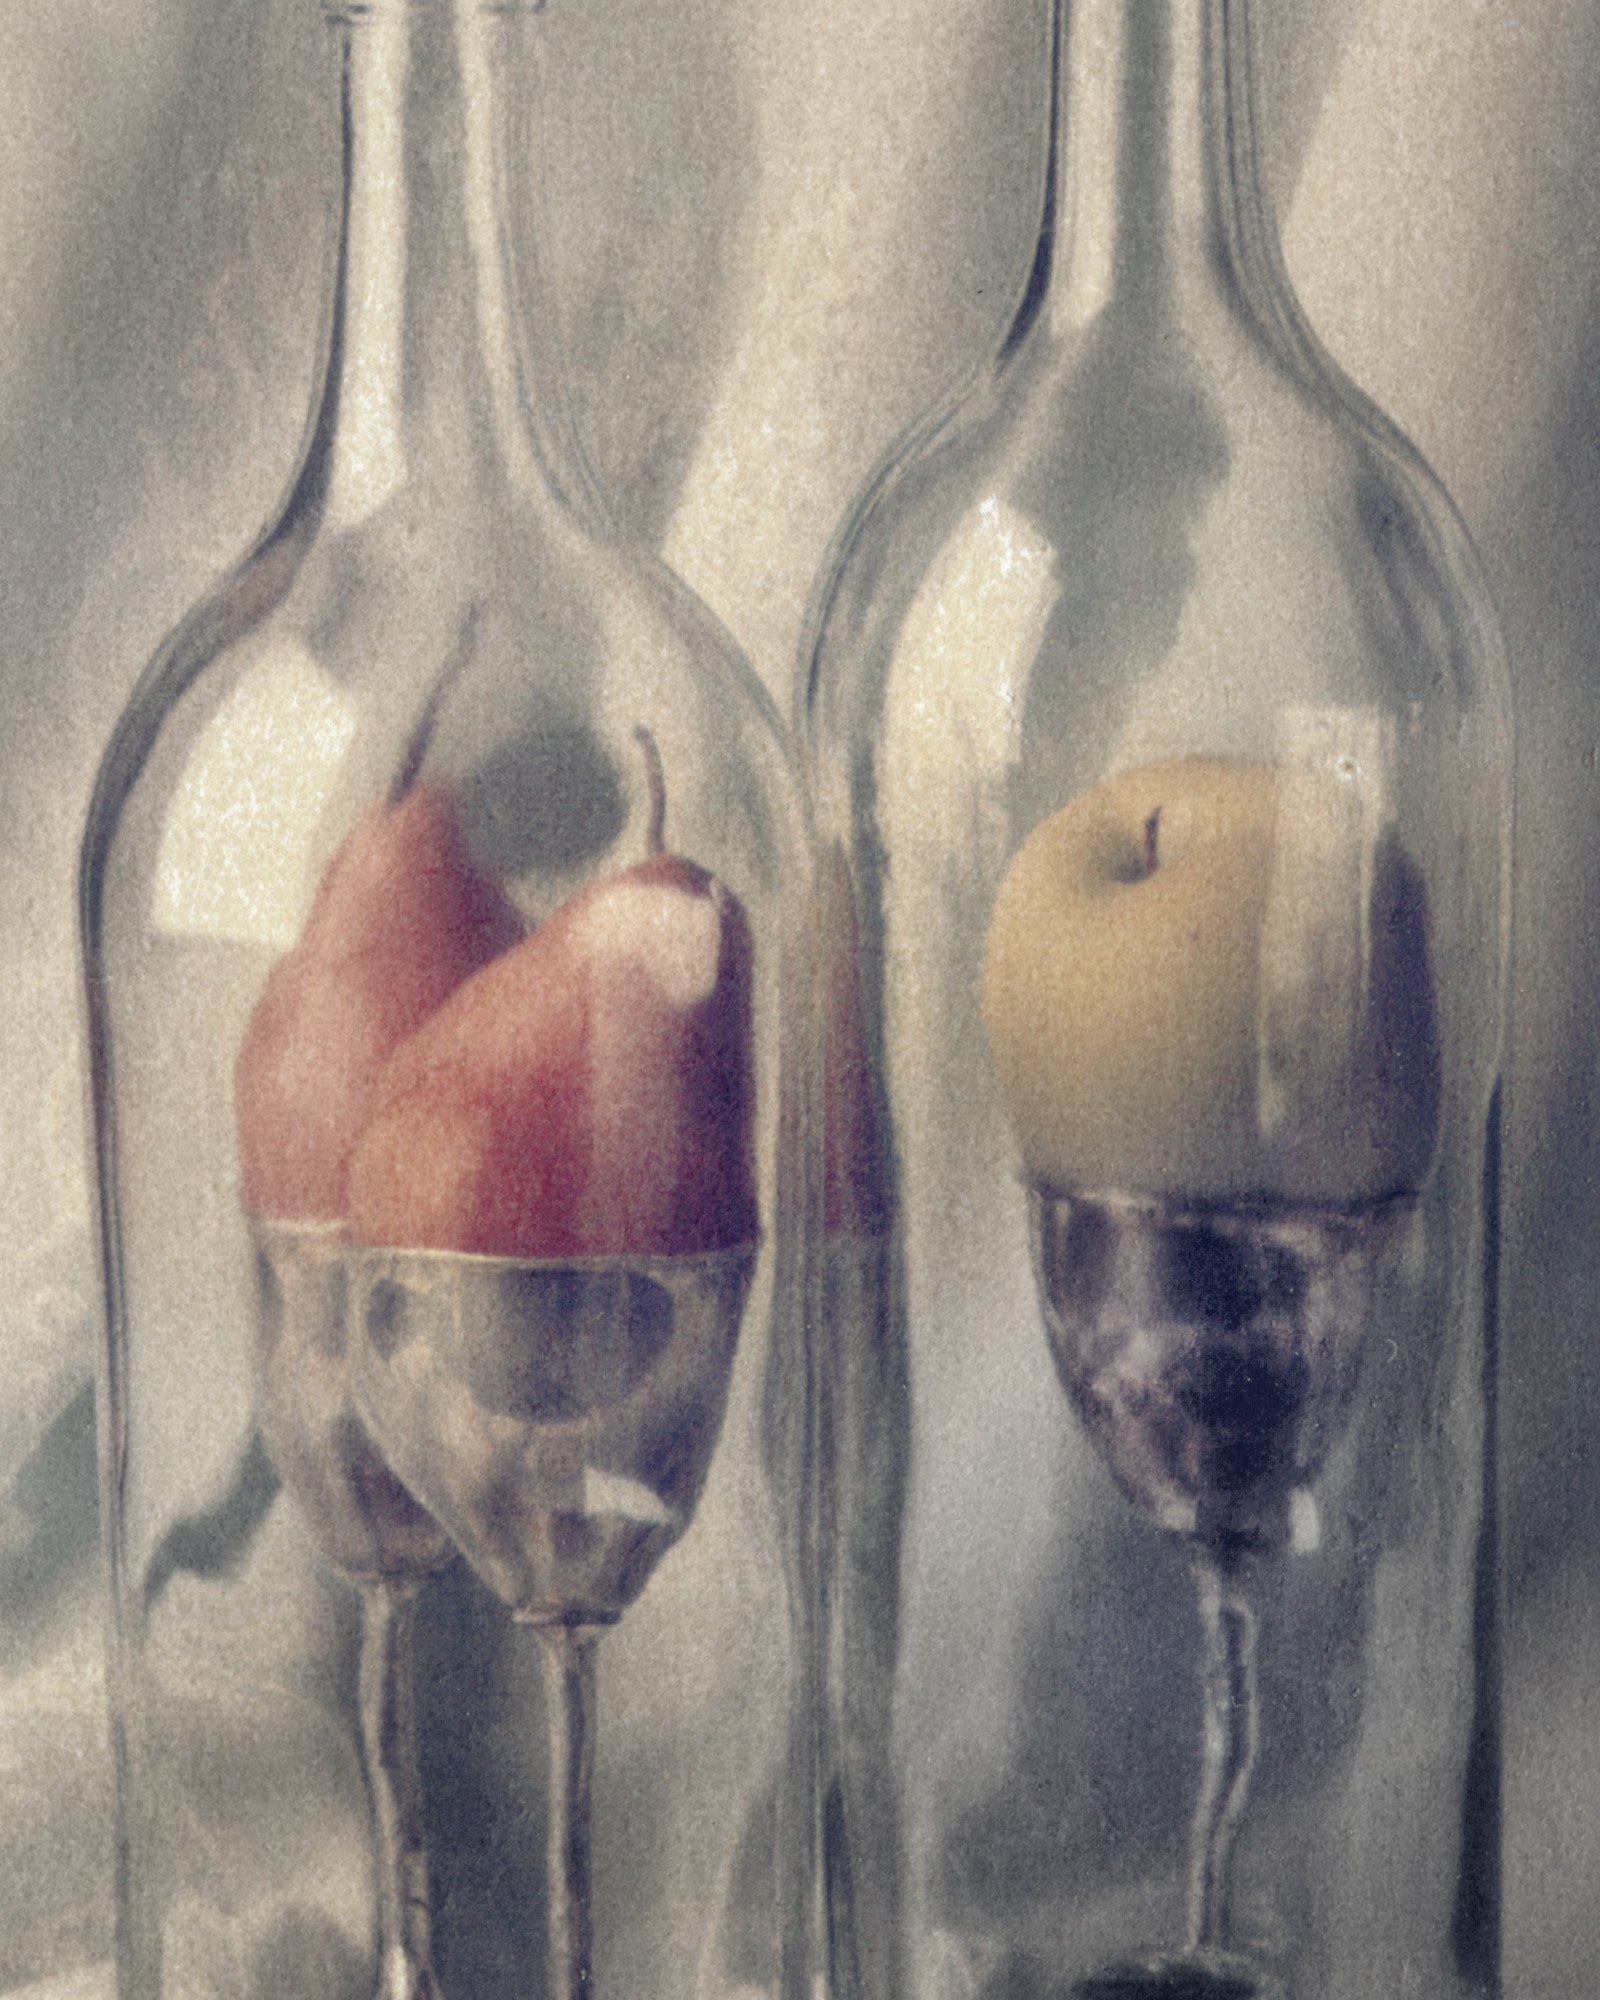 Bottle-Fruit-Crop-DUP.jpg